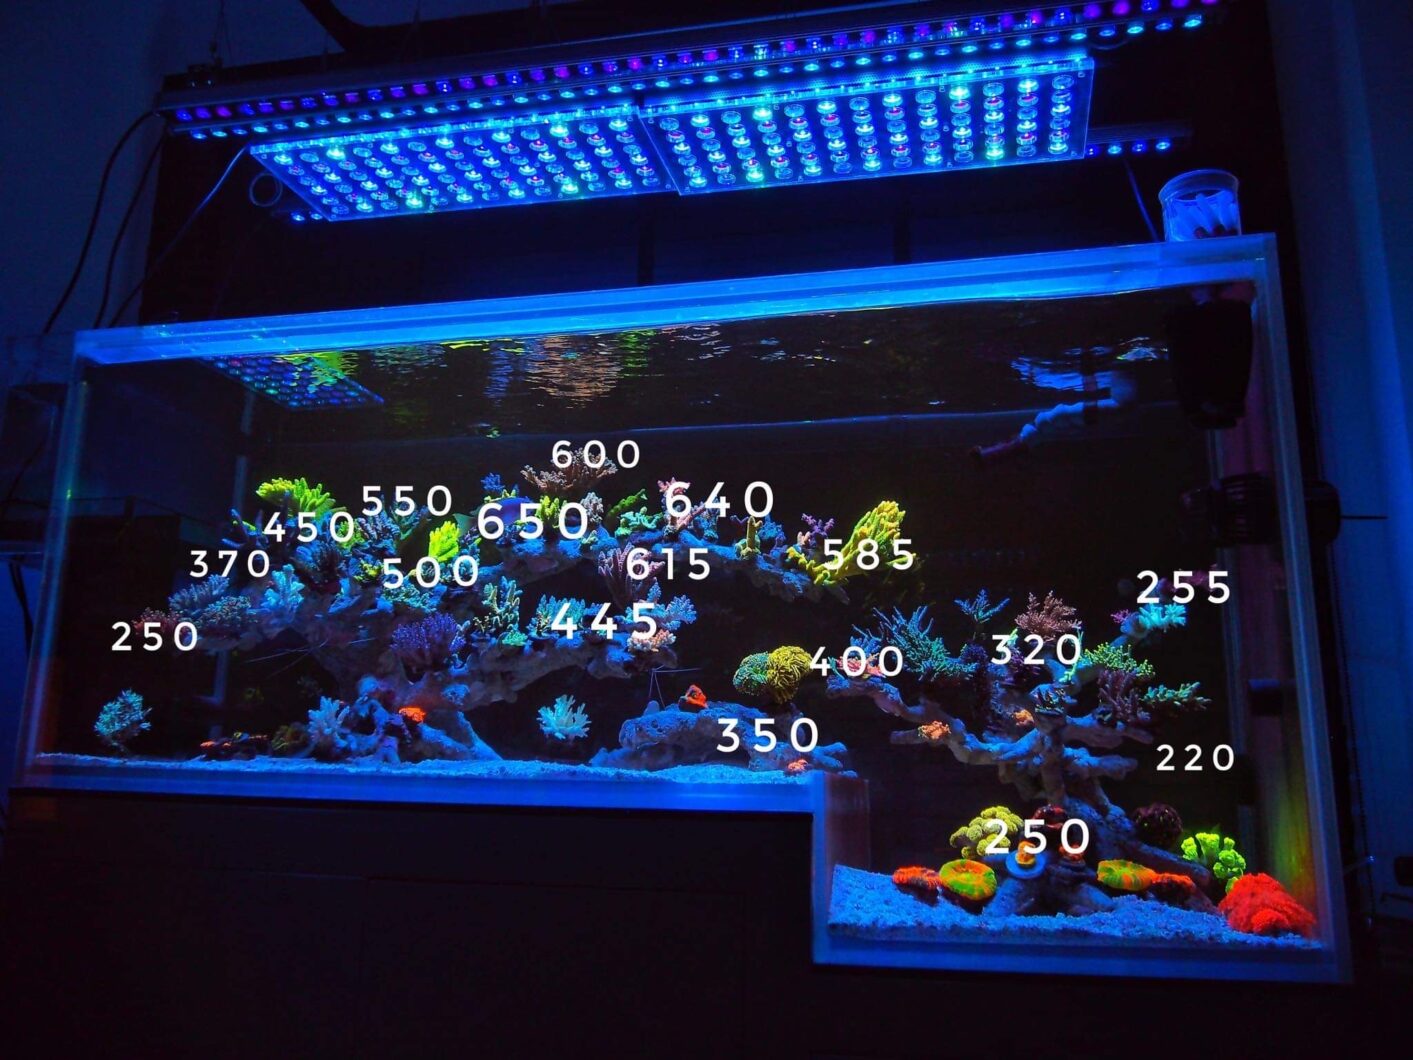 Atlantik icon or3 150 led bar útesové akvárium